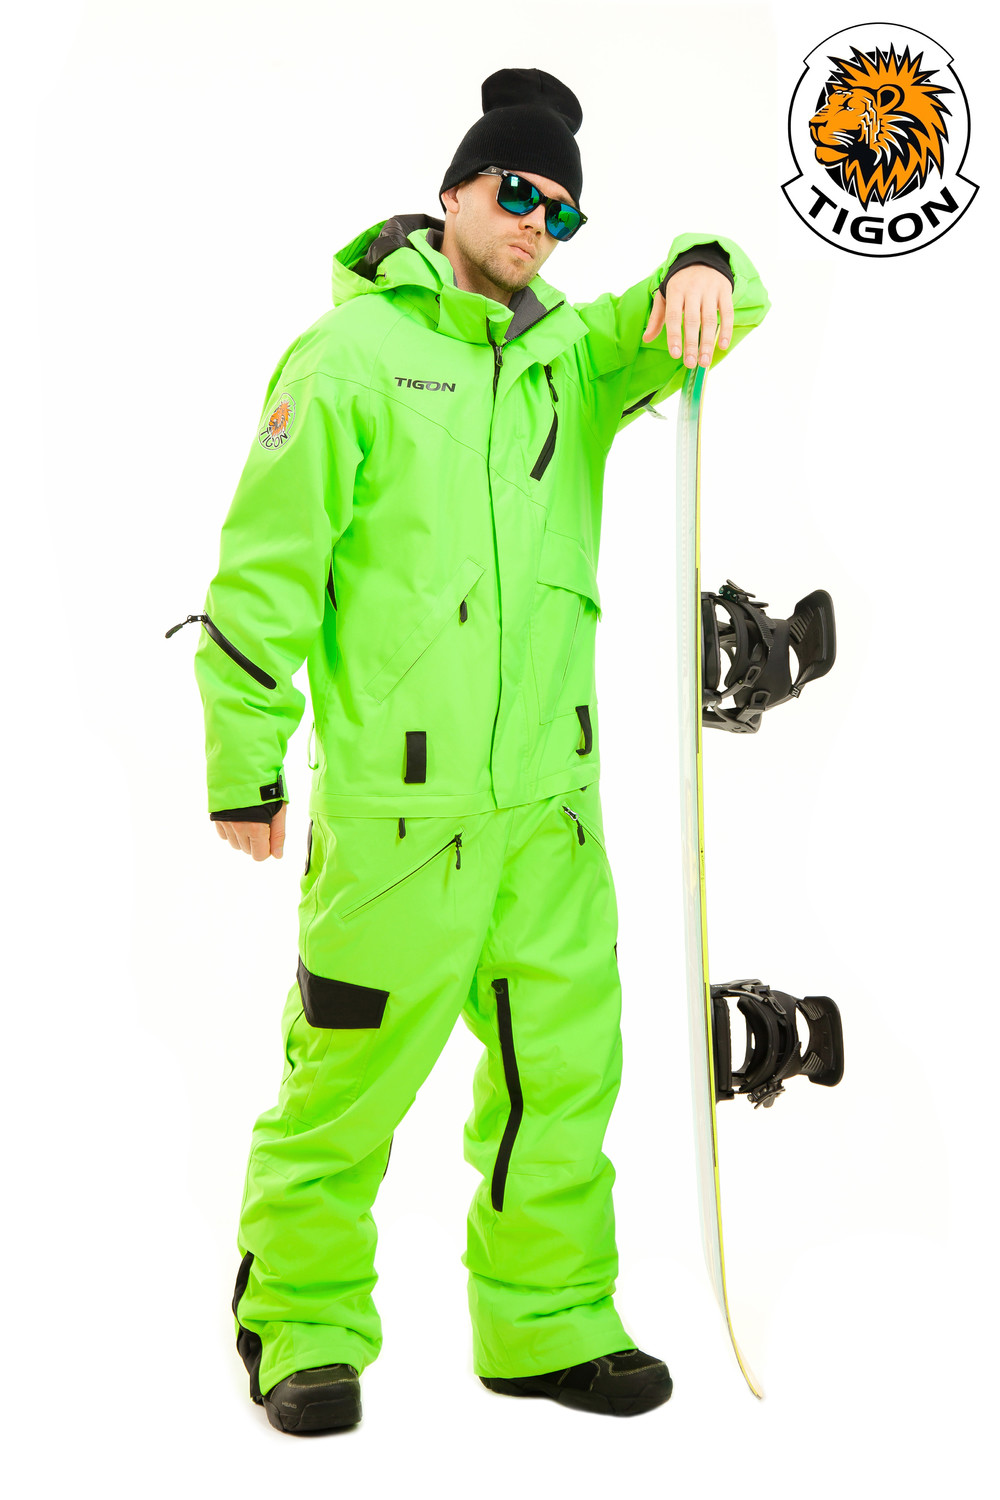 Men's one piece ski suit NEON - Webshop Snow-point.com. One piece suits ...